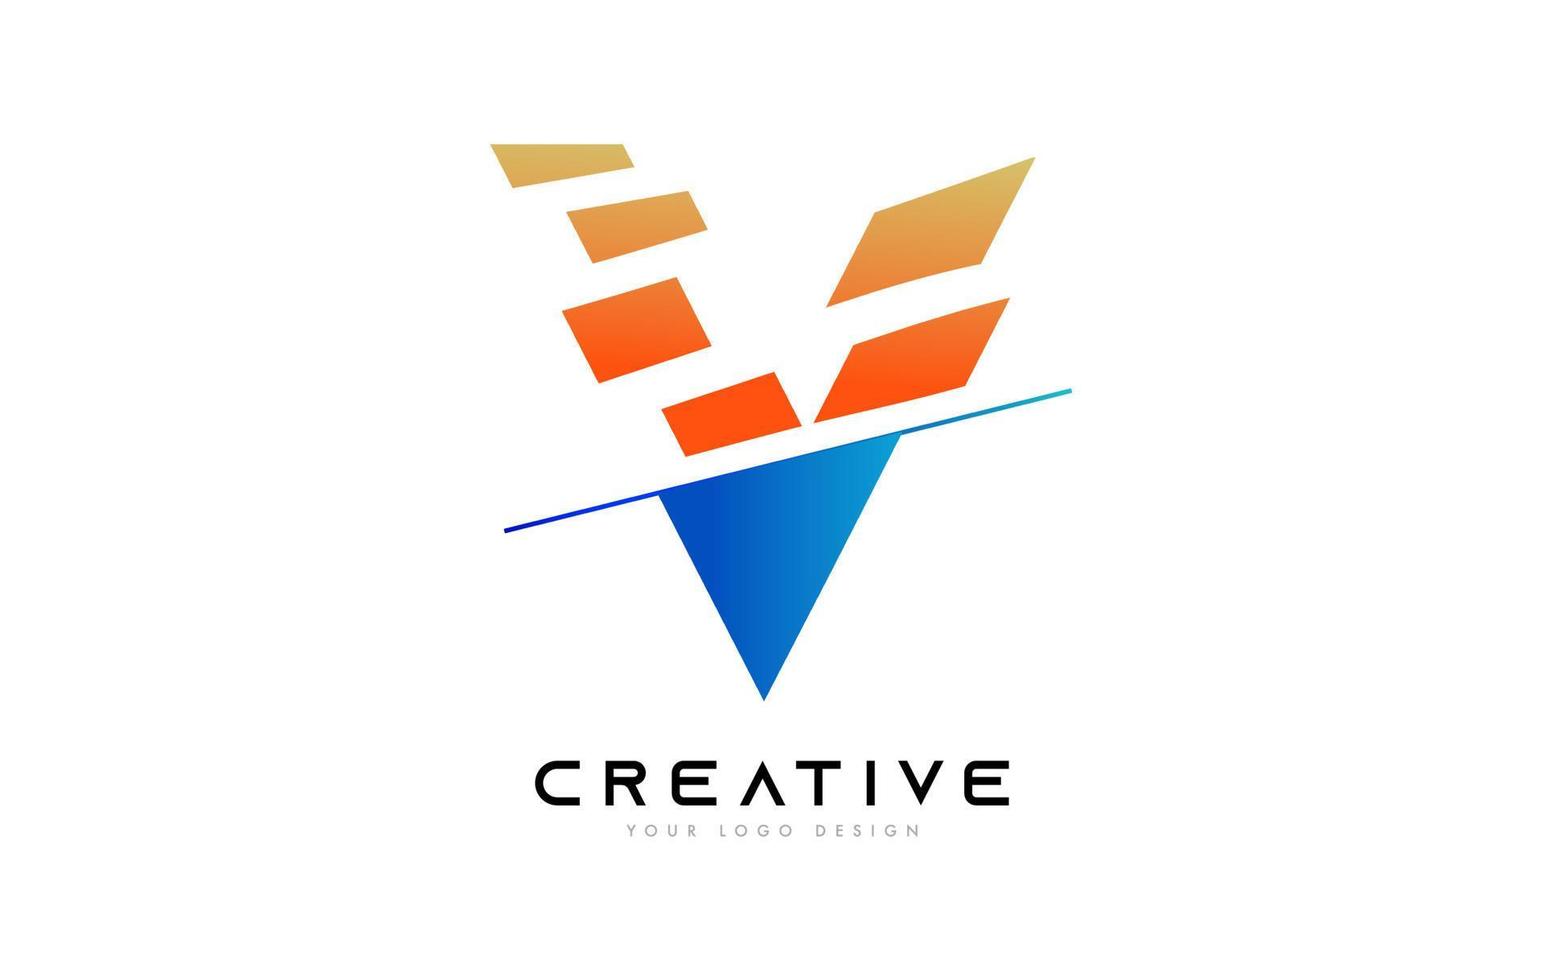 geschnittenes buchstabe v logo icon design mit blauen und orangefarbenen farben und geschnittenen scheiben vektor